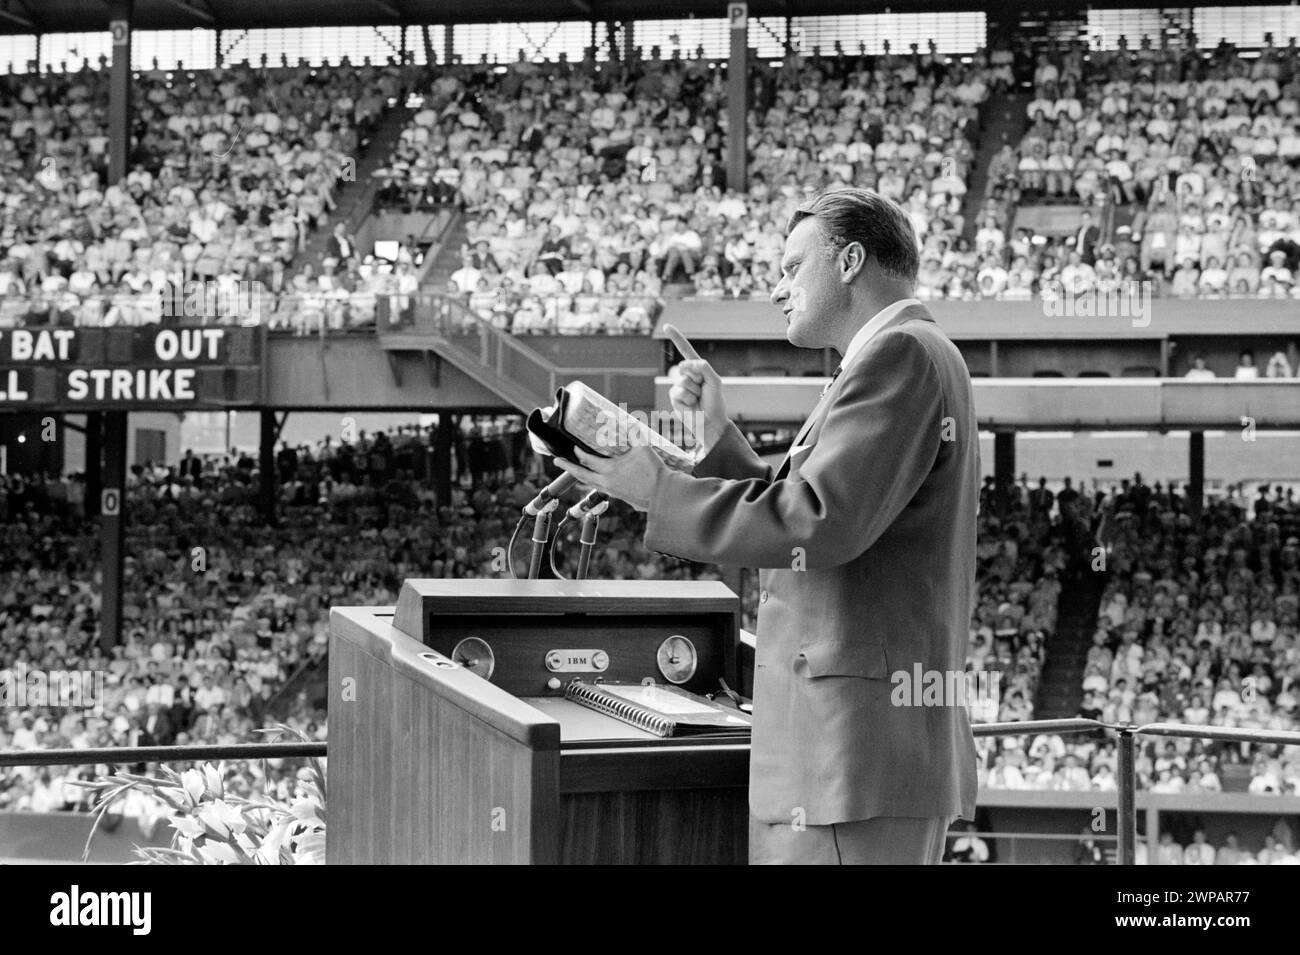 L'évangéliste Billy Graham prêchant à la foule lors d'une croisade, Griffith Stadium, Washington, D.C. John T. Bledsoe, U.S. News & World Report Magazine Photograph Collection, 25 juin 1960 Banque D'Images